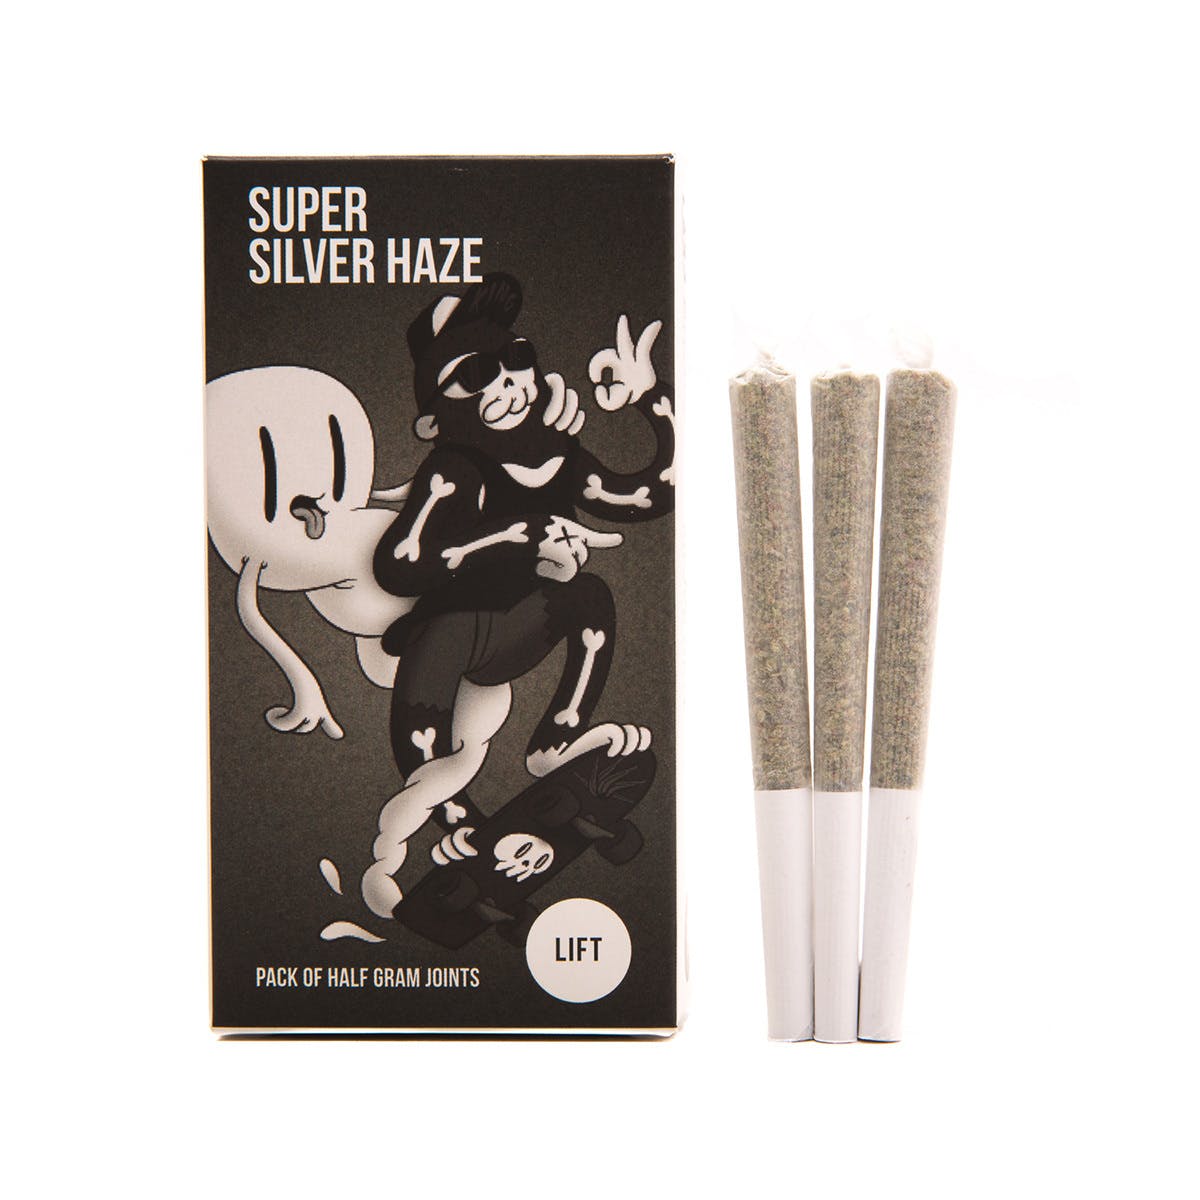 Super Silver Haze Pre-Roll 3pk